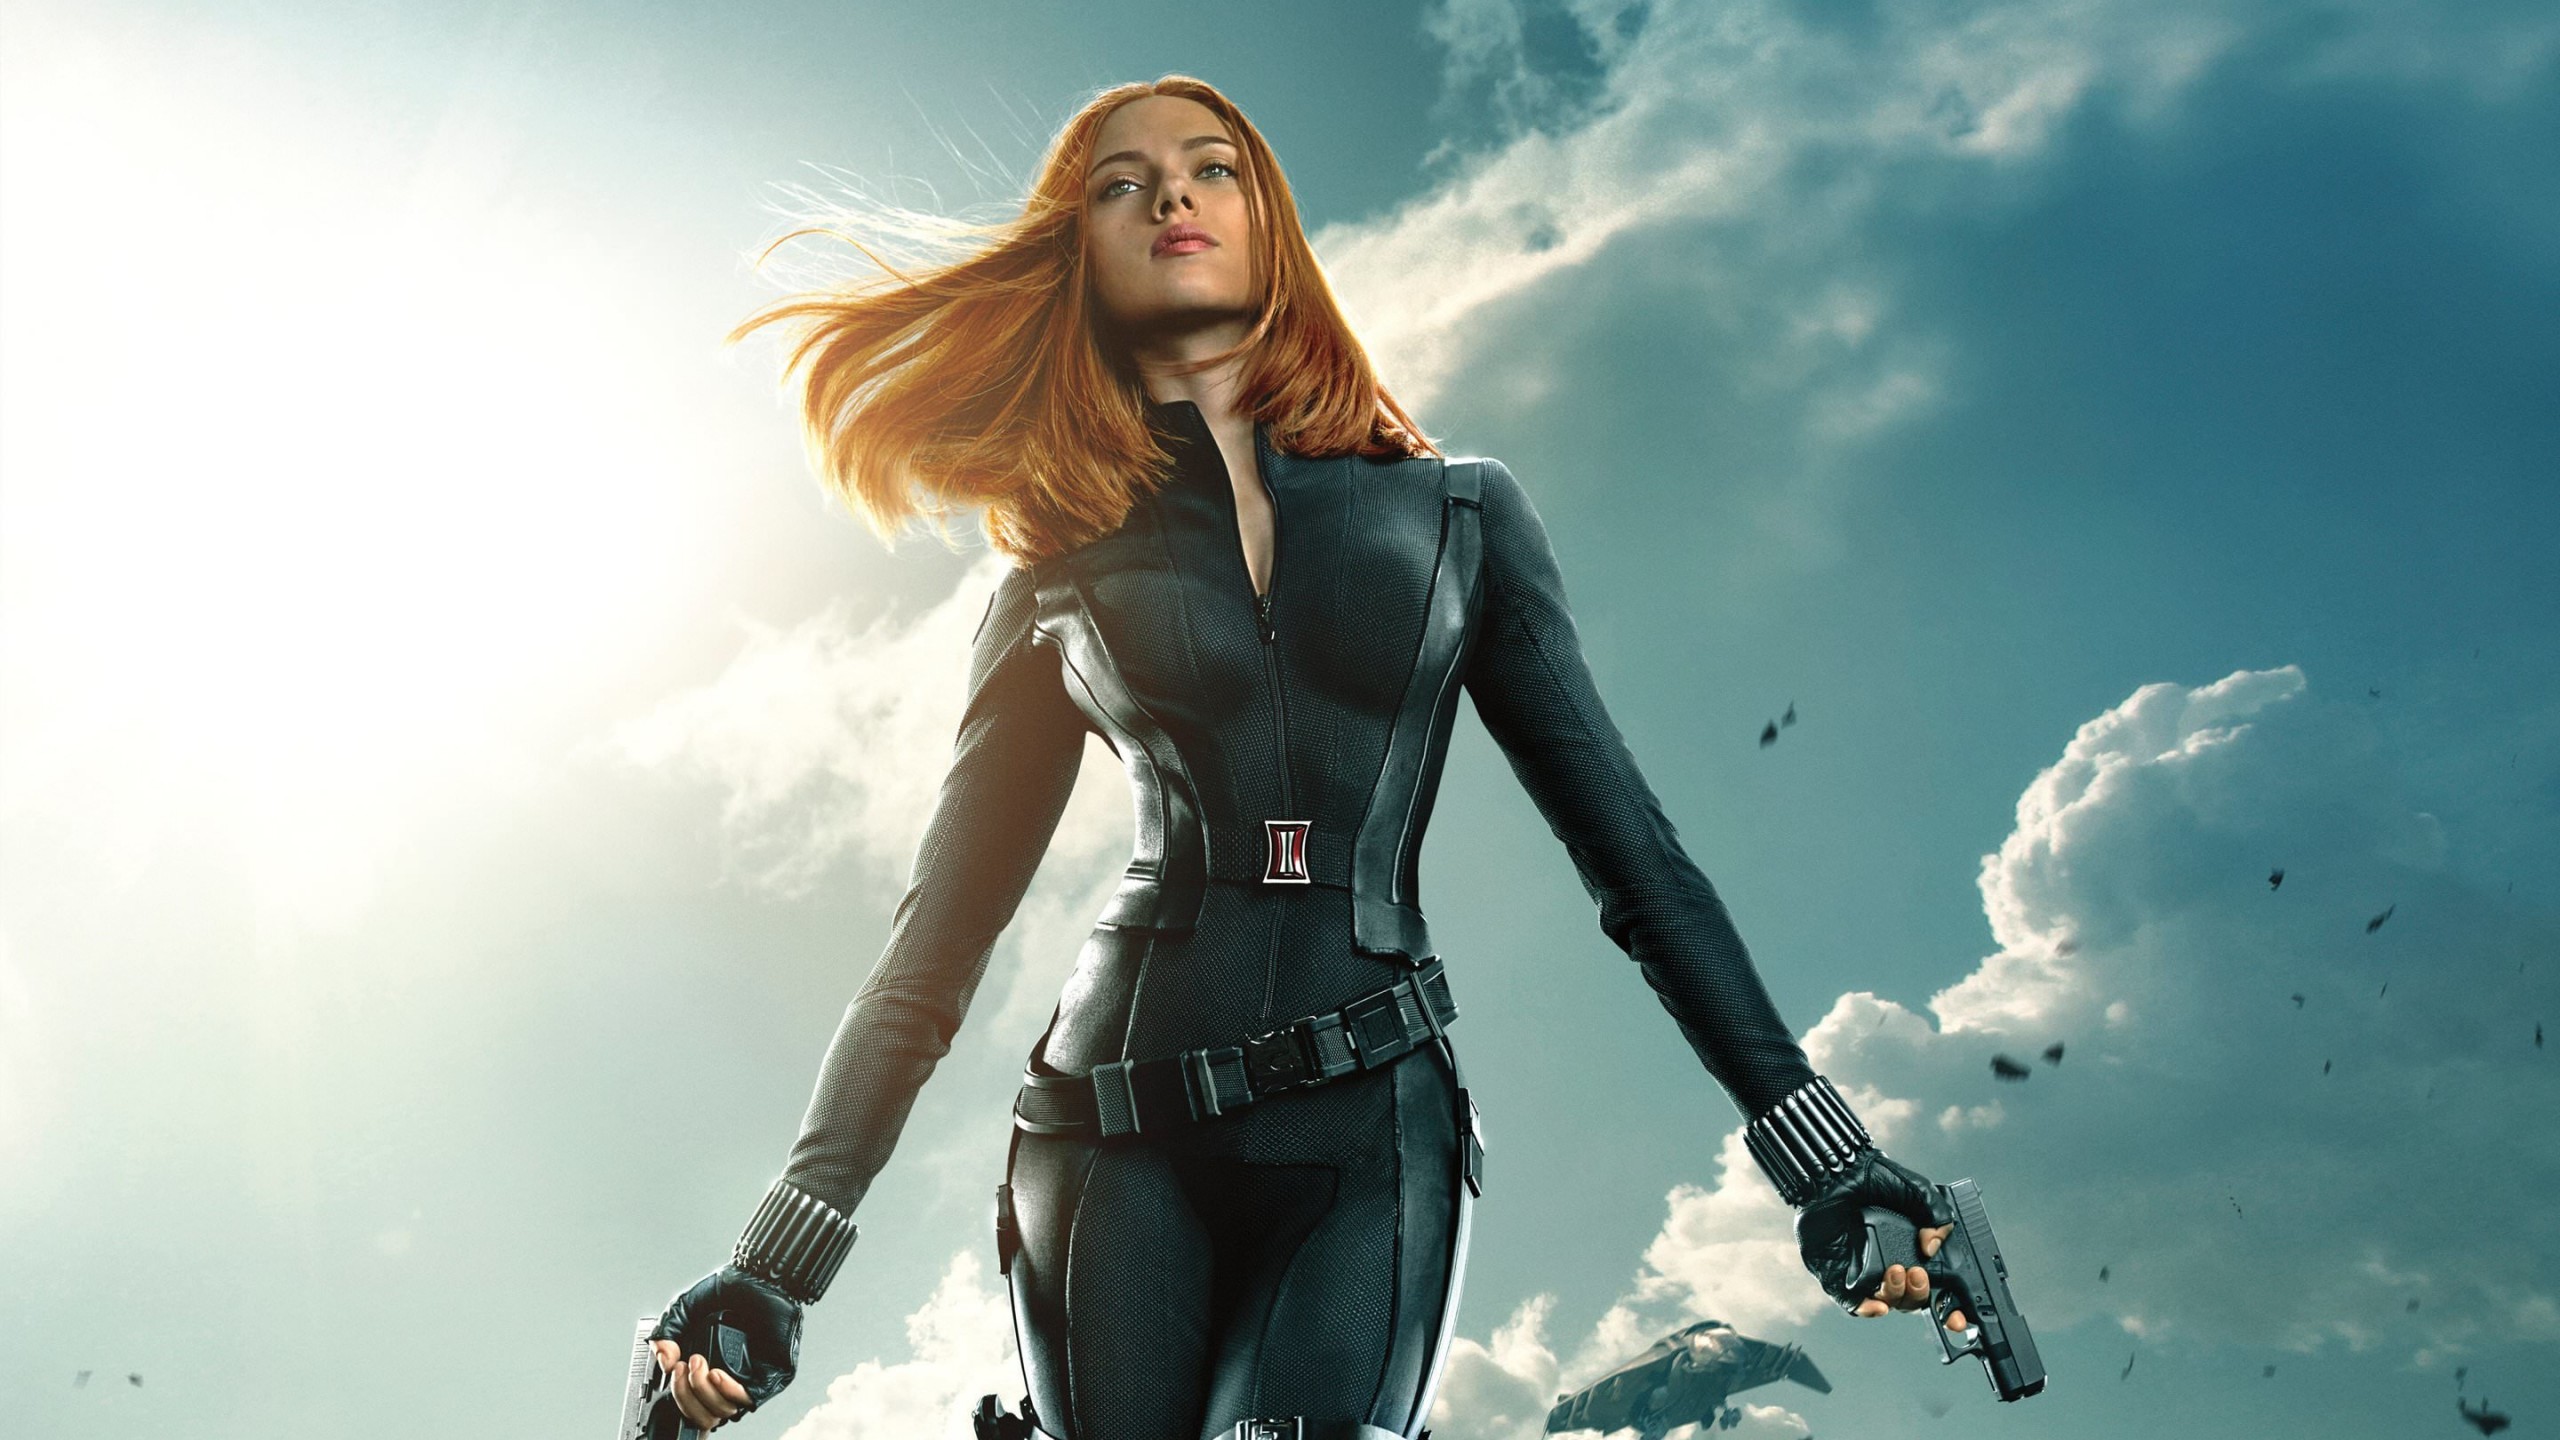 Scarlett Johansson in "Captain America: The Winter Soldier" Wallpaper for Social Media YouTube Channel Art